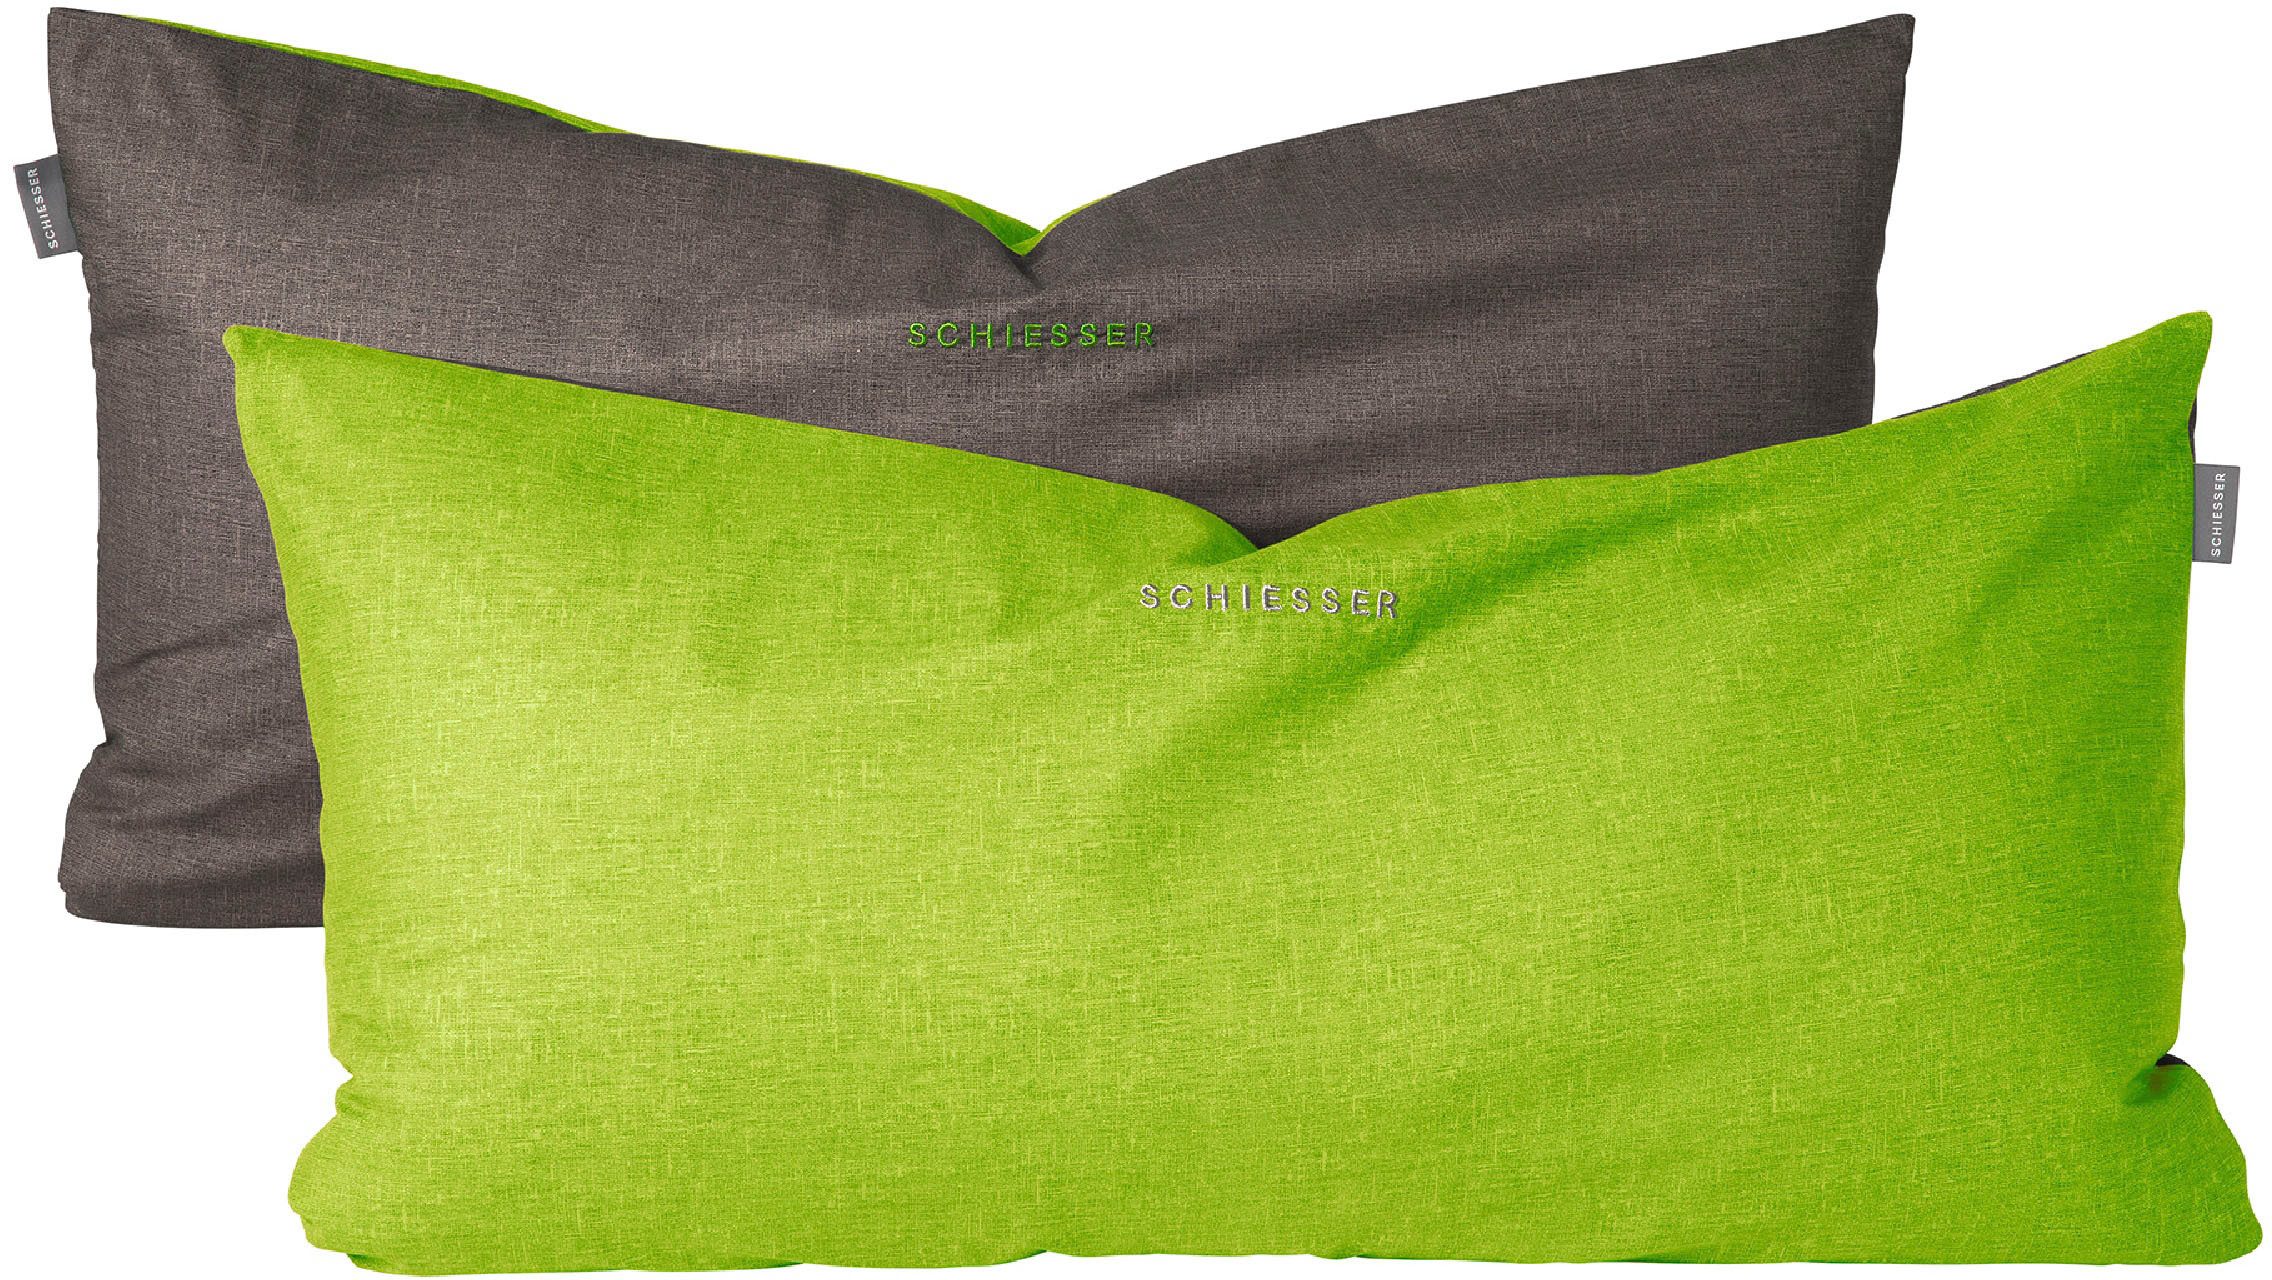 Kissenhüllen Doubleface aus weicher Baumwolle mit edlem Melangeeffekt in Wendeoptik, Schiesser (2 Stück), Made in Green